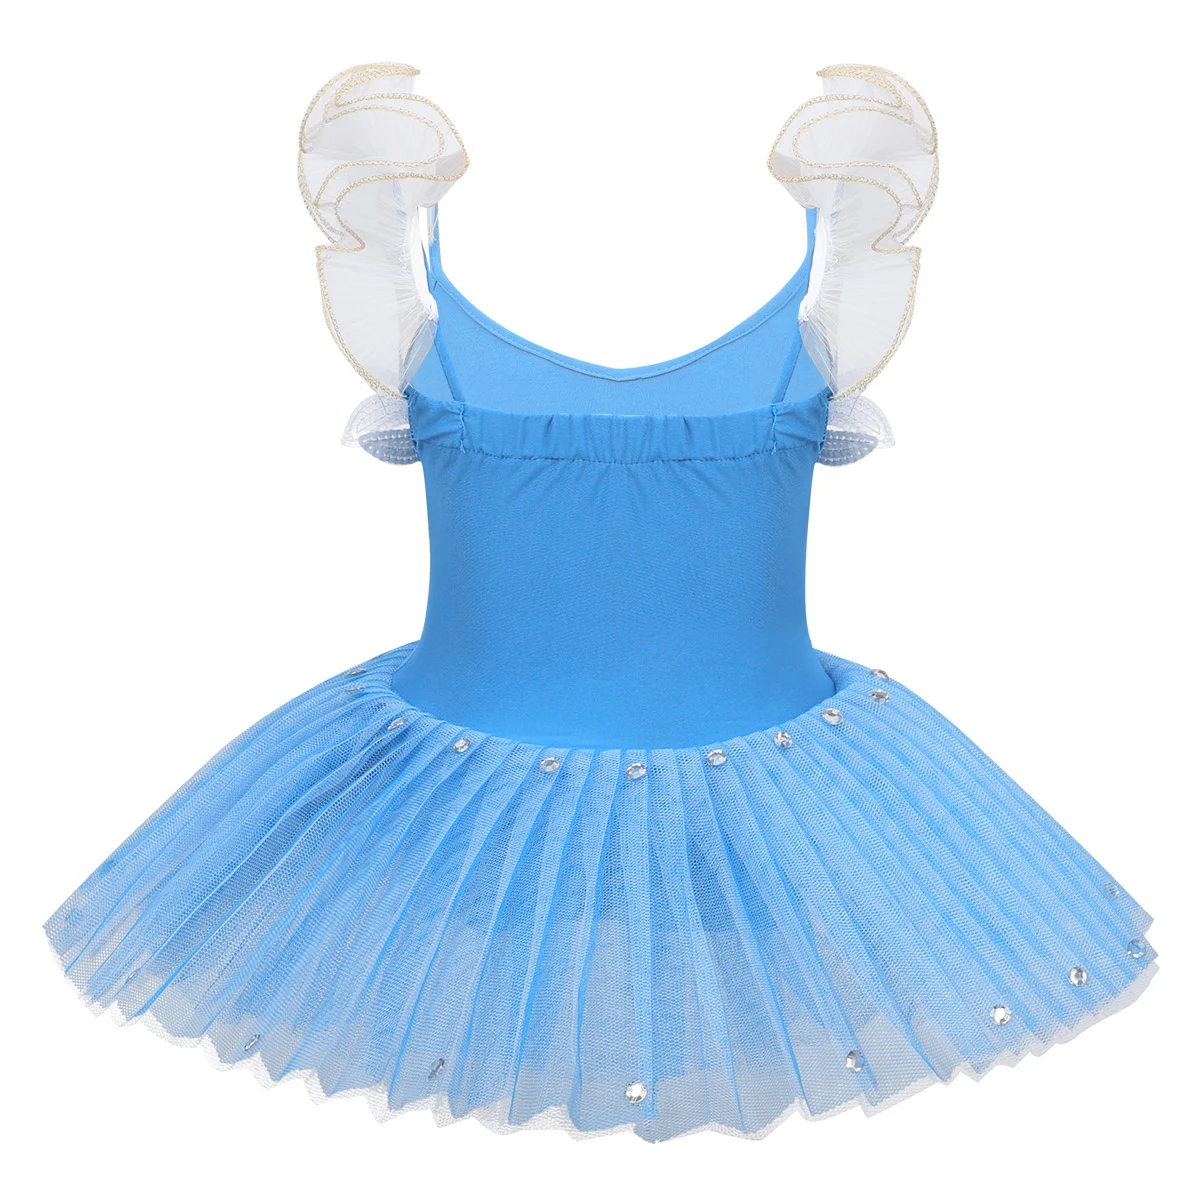 TiaoBug/детская синяя профессиональная юбка-пачка трико для подростков детское платье для девочек с блестками и цветочным принтом, танцевальный костюм лебедя